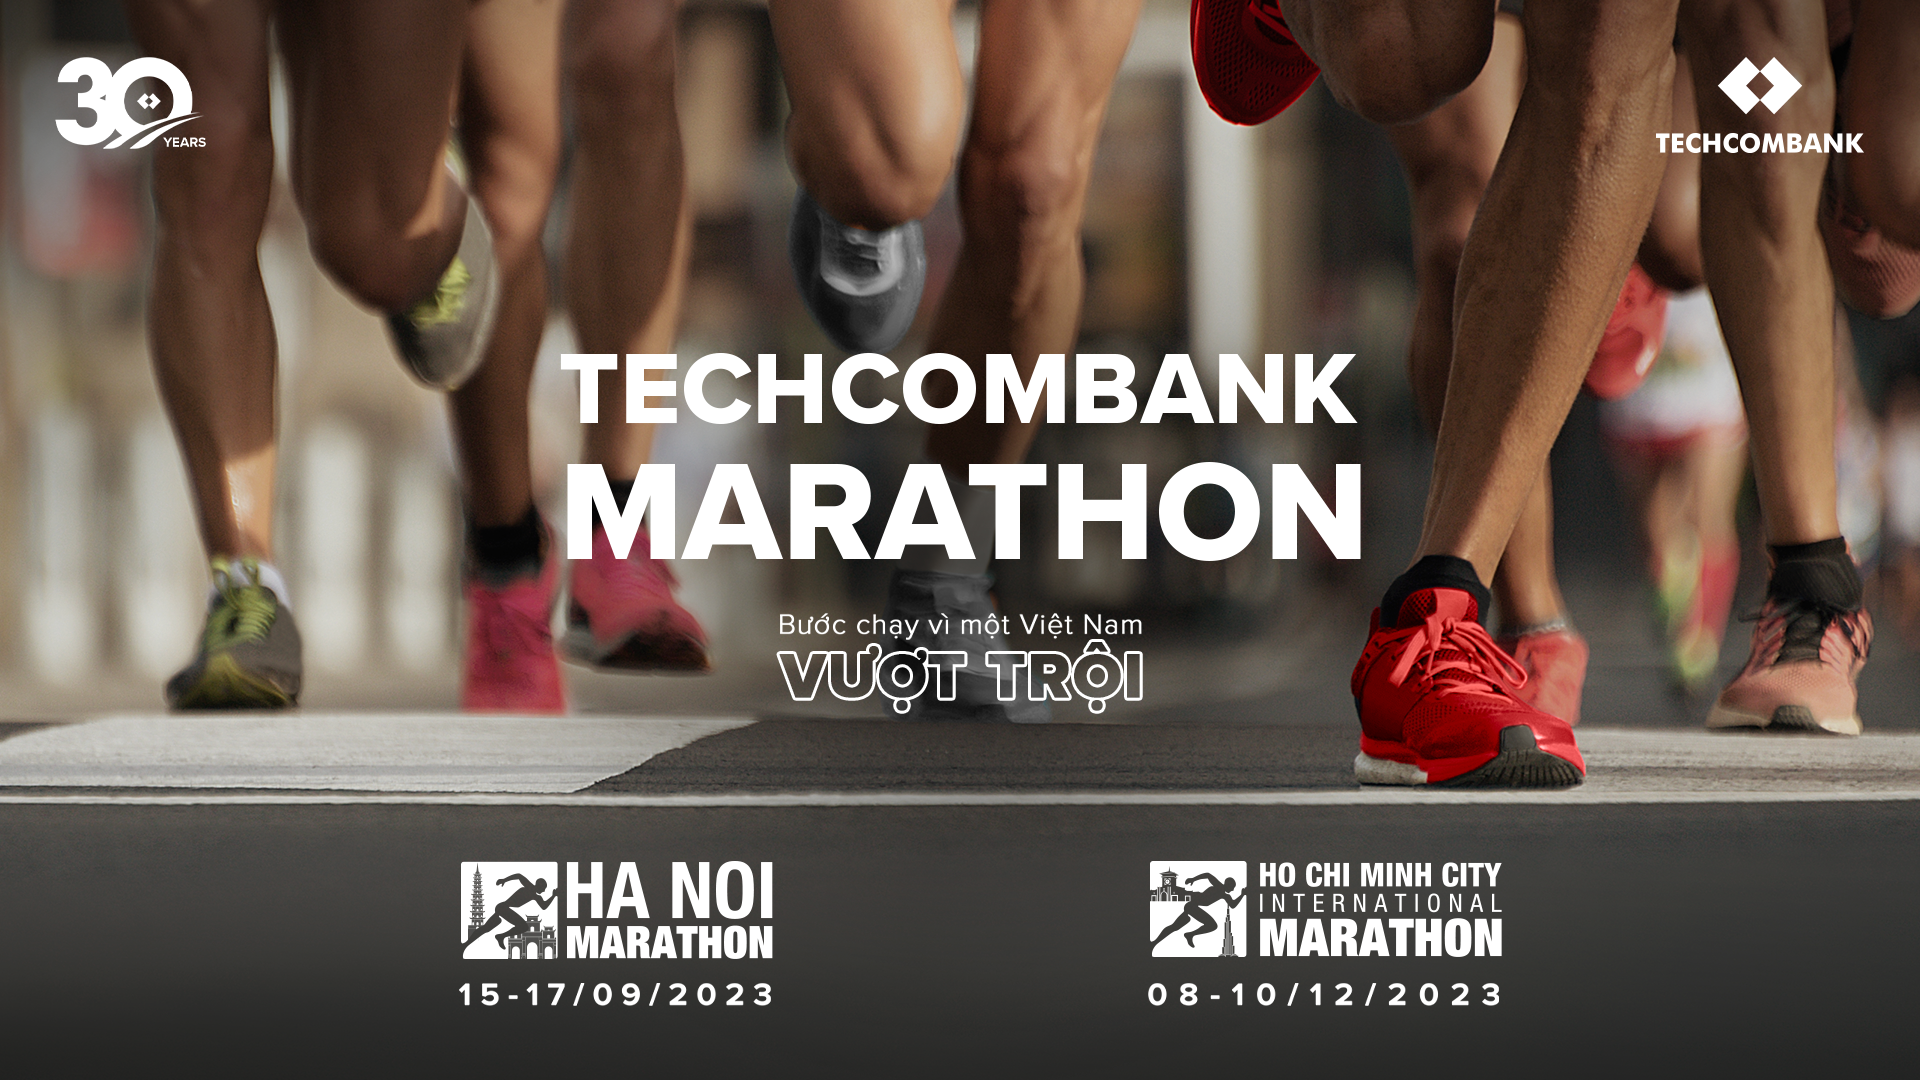 Techcombank kỷ niệm 30 năm thành lập, nâng tầm các sự kiện Marathon tại Hà Nội và Thành phố Hồ Chí Minh - Ảnh 2.